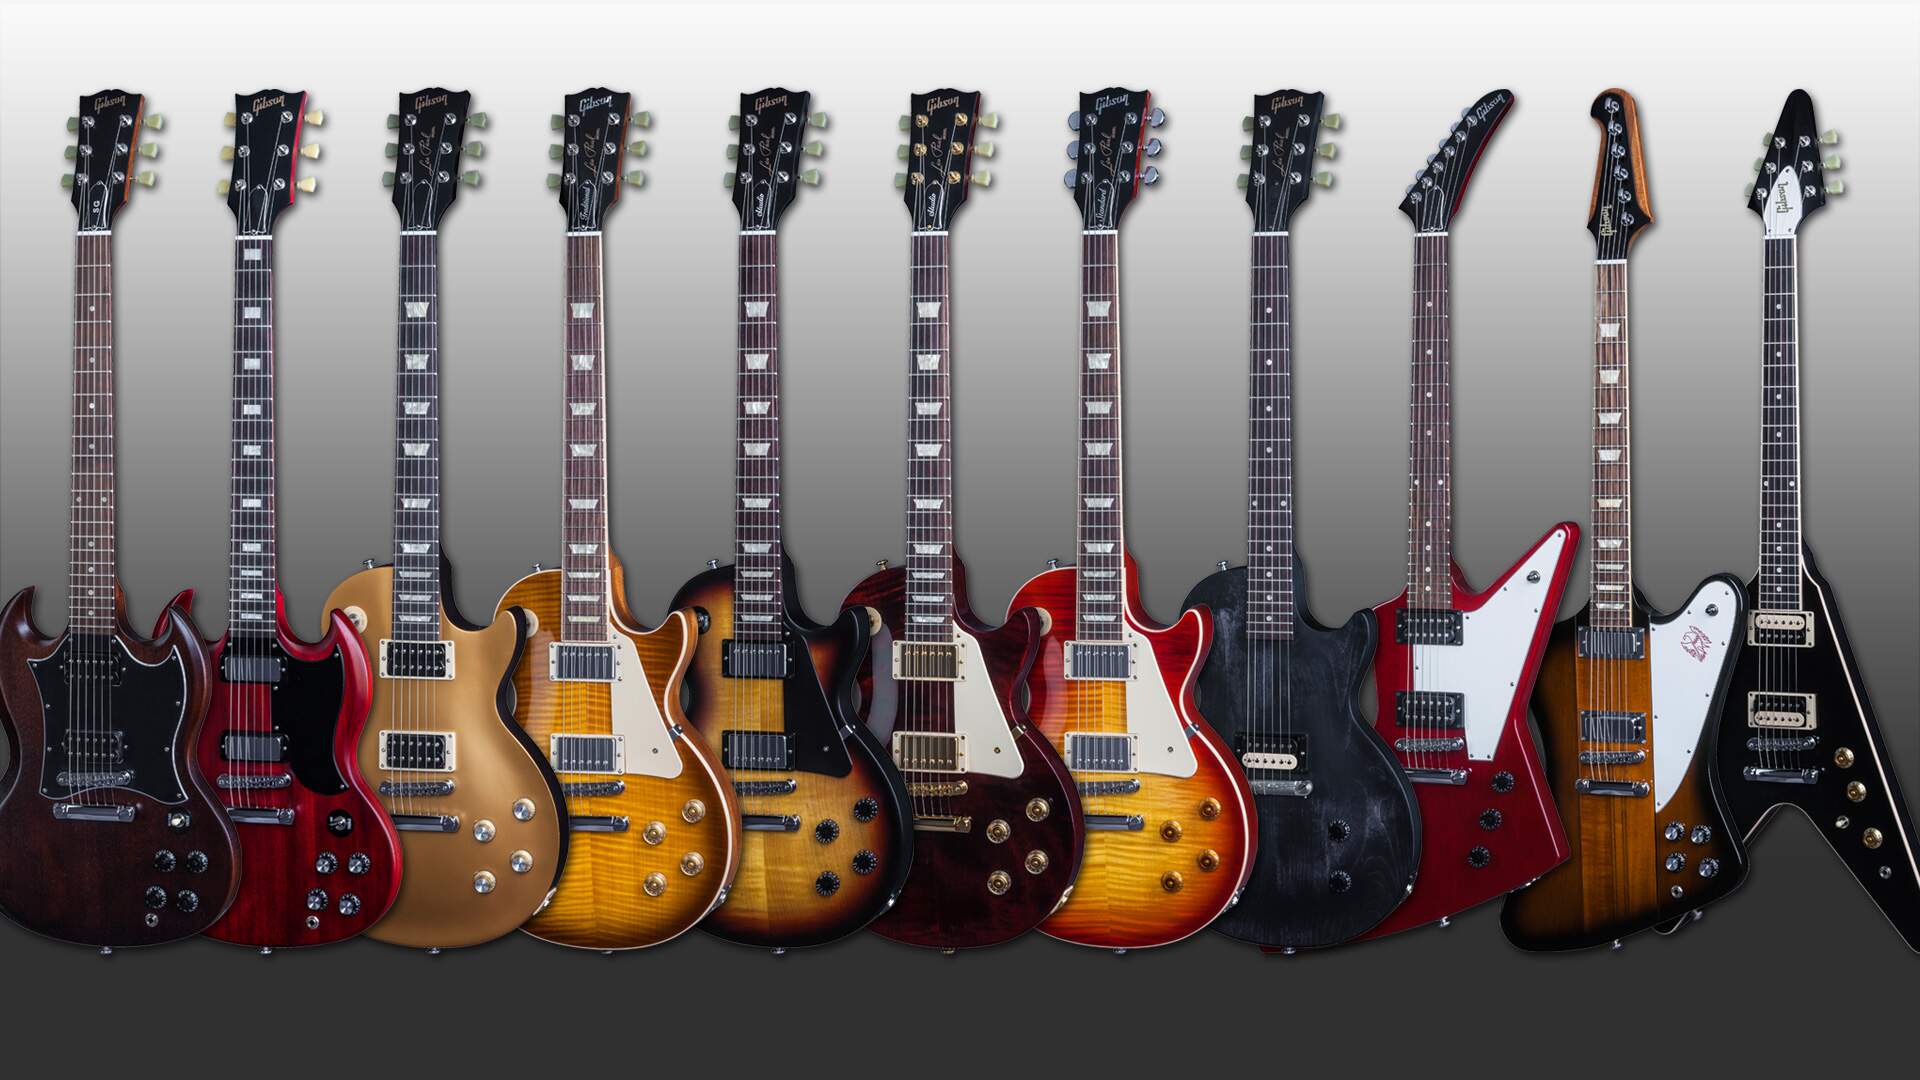 Guitarras Gibson - Matéria sobre a possível falência da marca